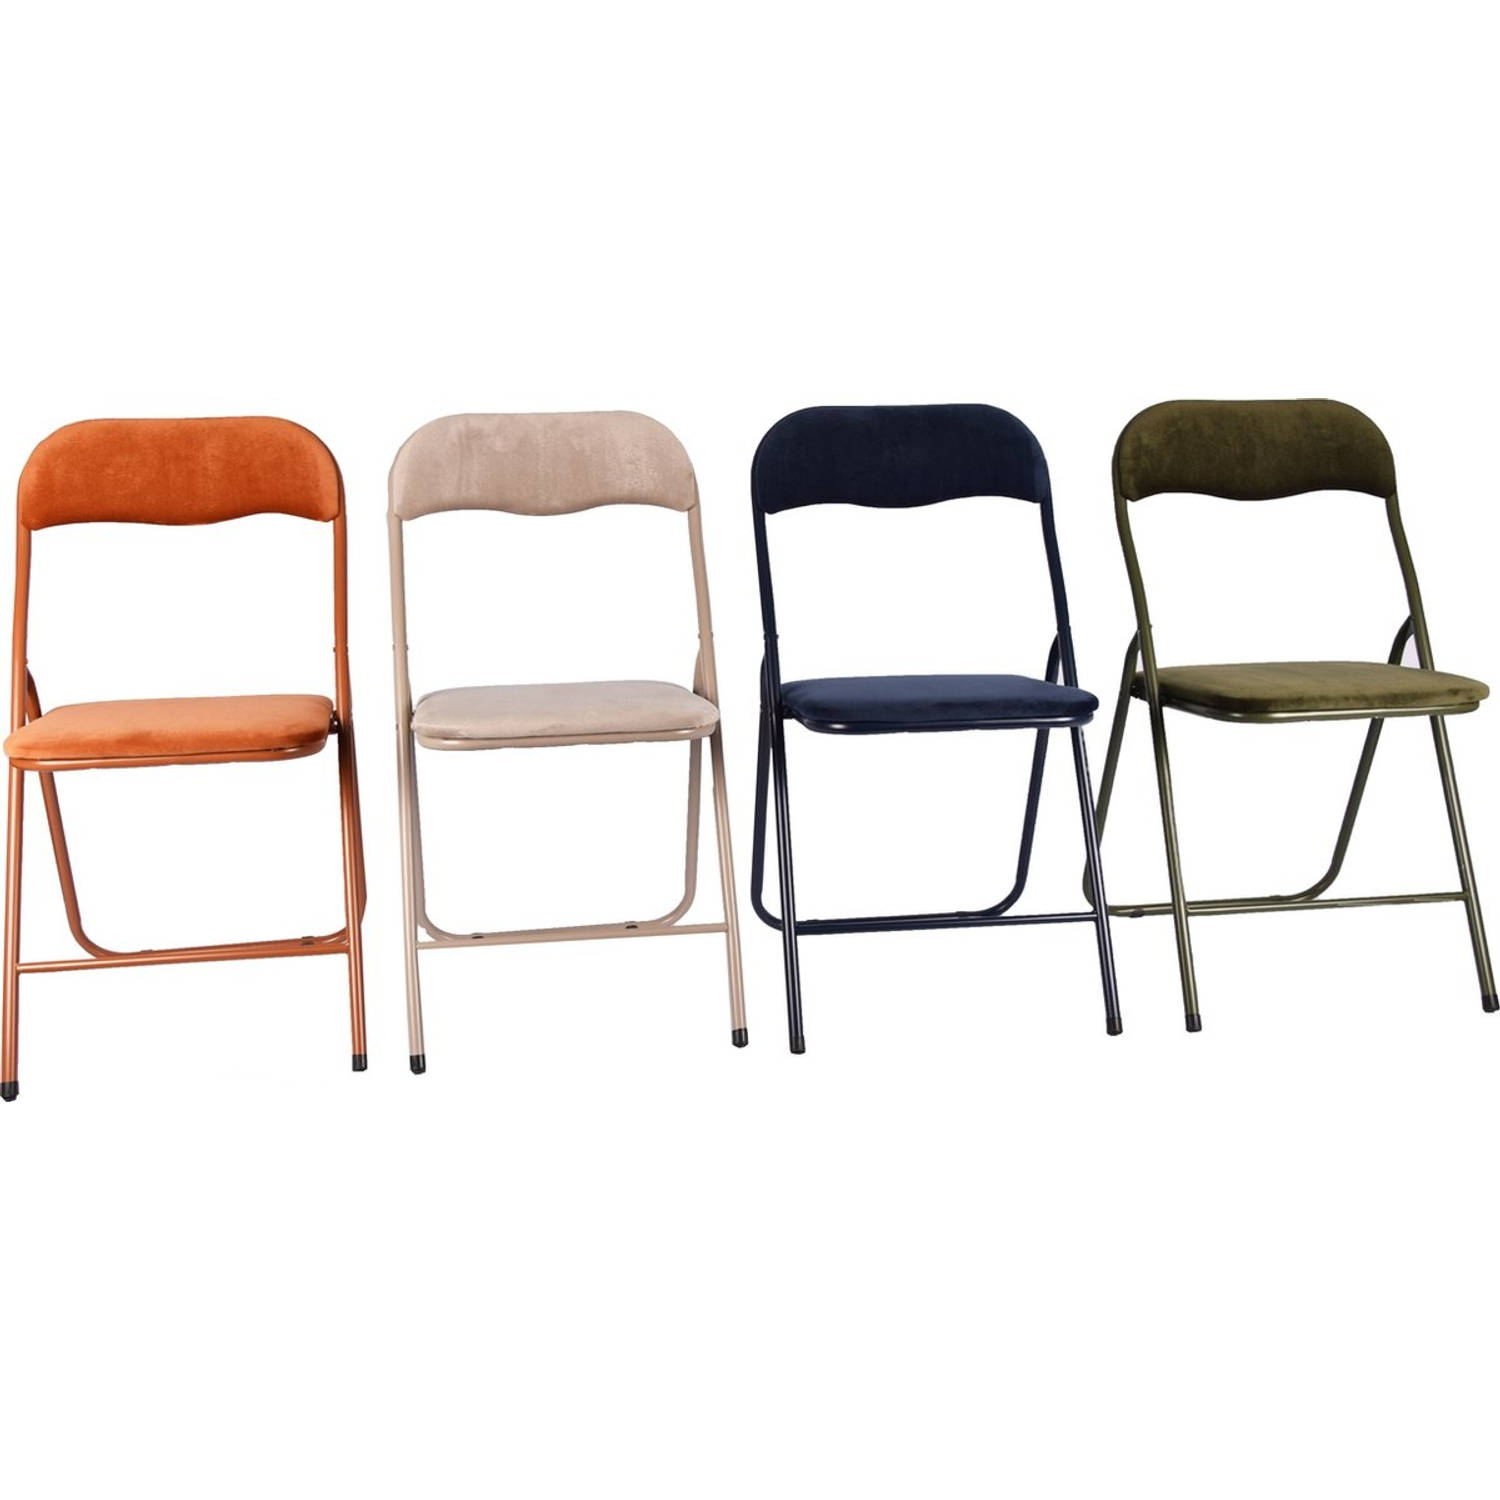 4x Klapstoel met zithoogte van 43 cm Vouwstoel velvet zitvlak en rug bekleed - stoel- tafelstoel - klapstoel - Velvet